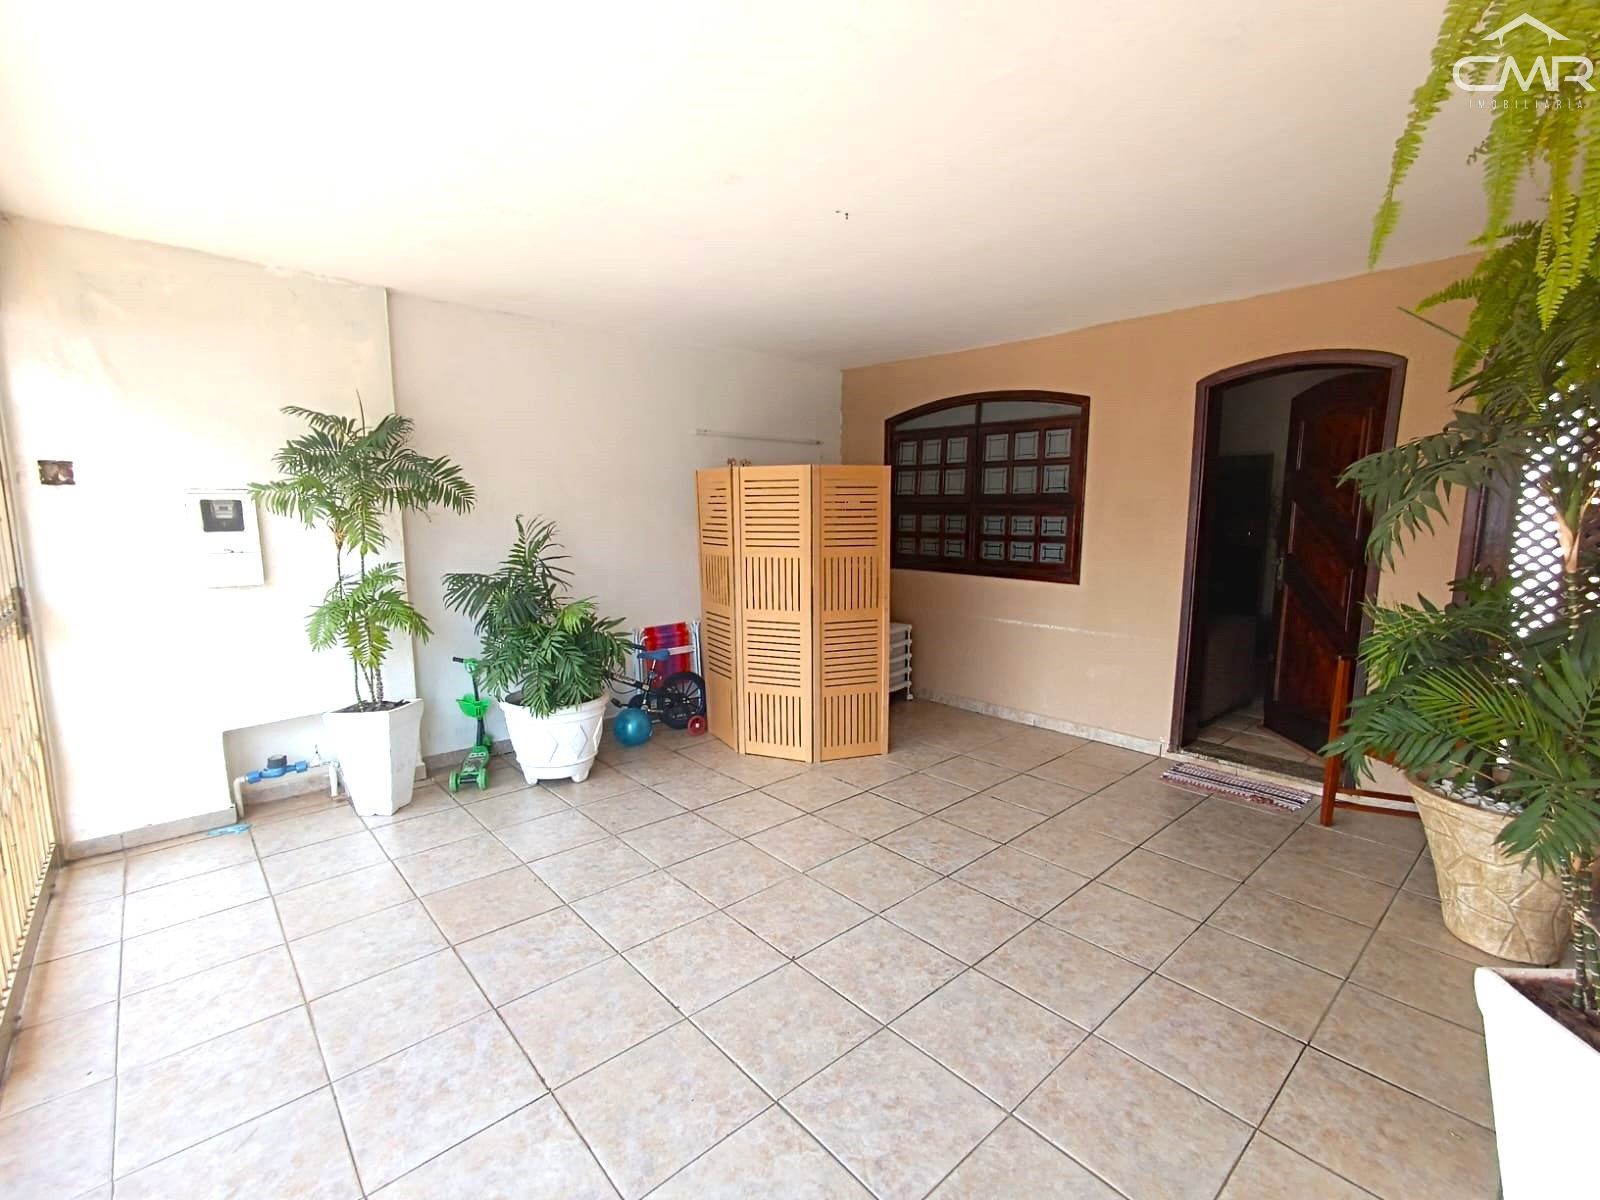 Casa  venda  no Jardim Nova Iguau - Piracicaba, SP. Imveis